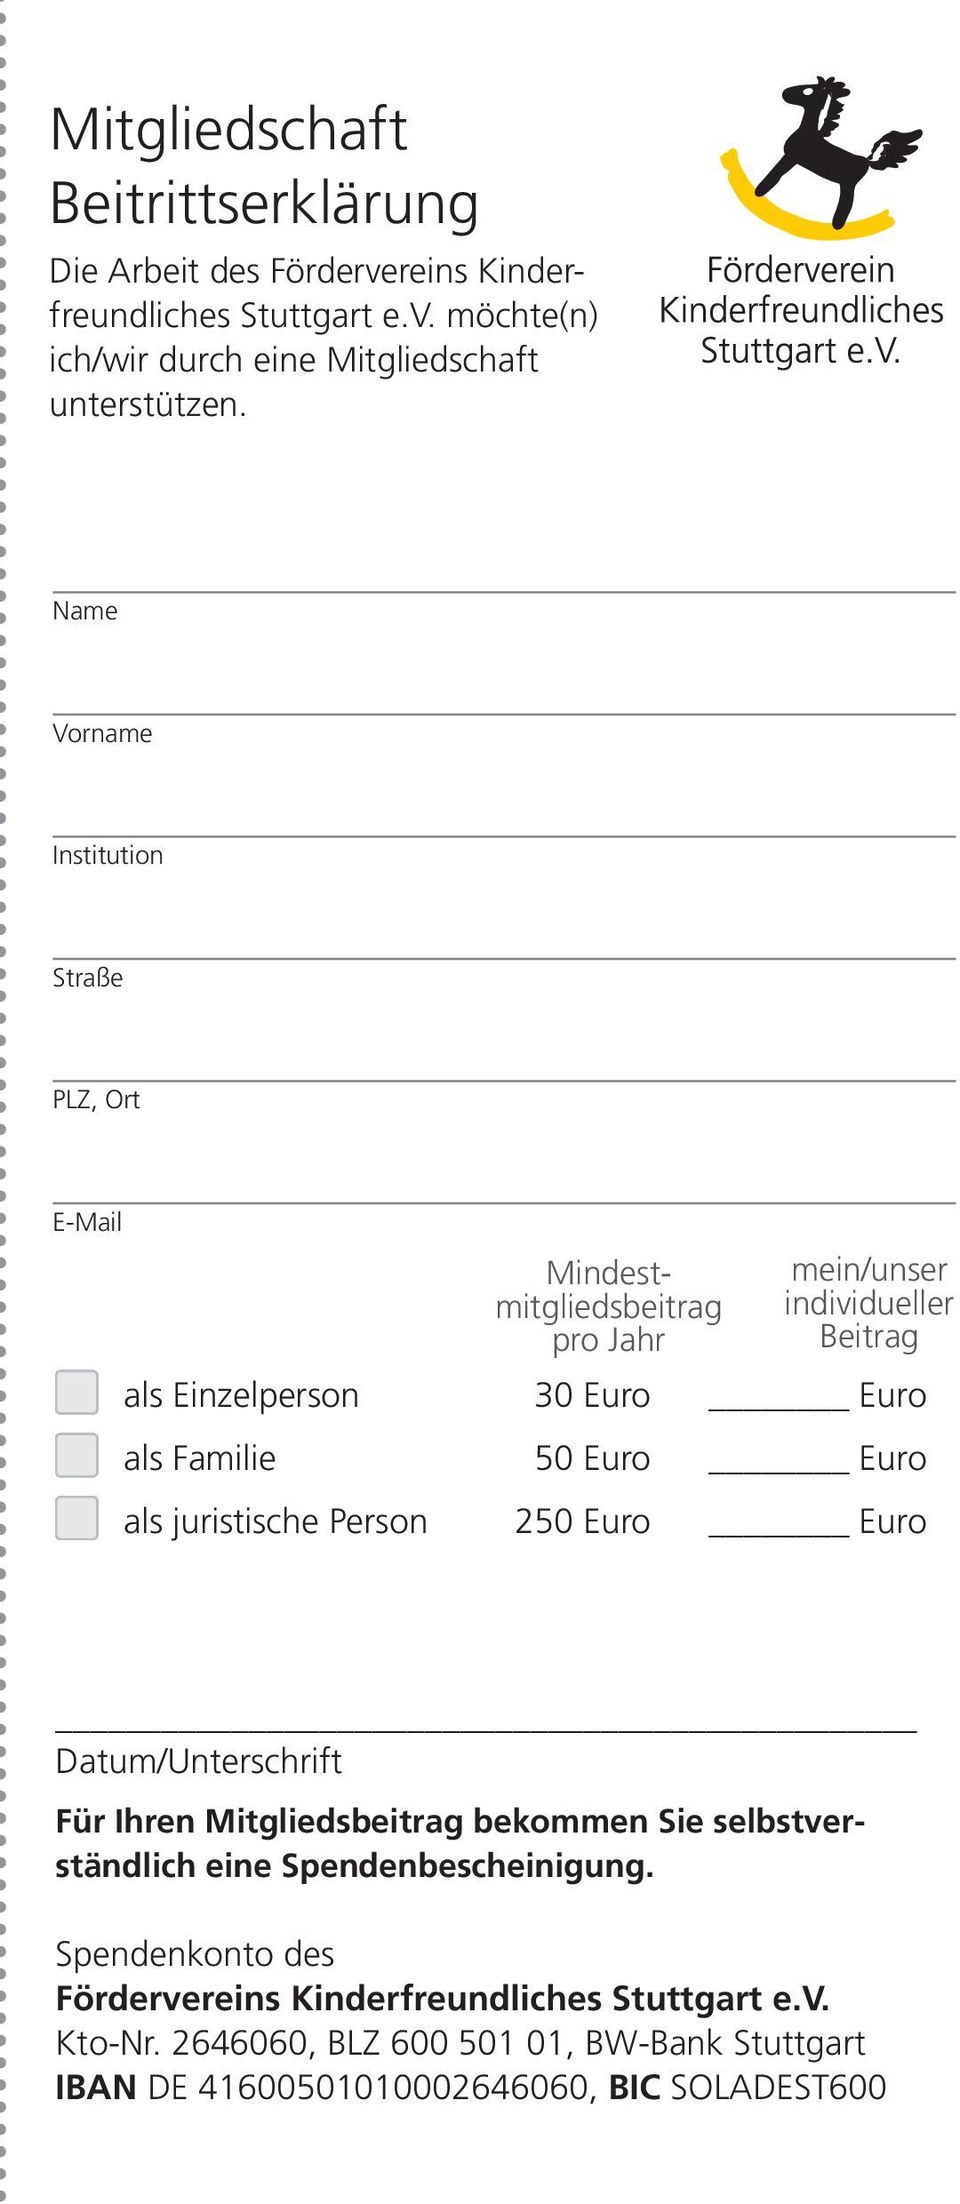 50 Euro Euro als juristische Person 250 Euro Euro Datum/Unterschrift Für Ihren Mitgliedsbeitrag bekommen Sie selbstverständlich eine Spendenbescheinigung.